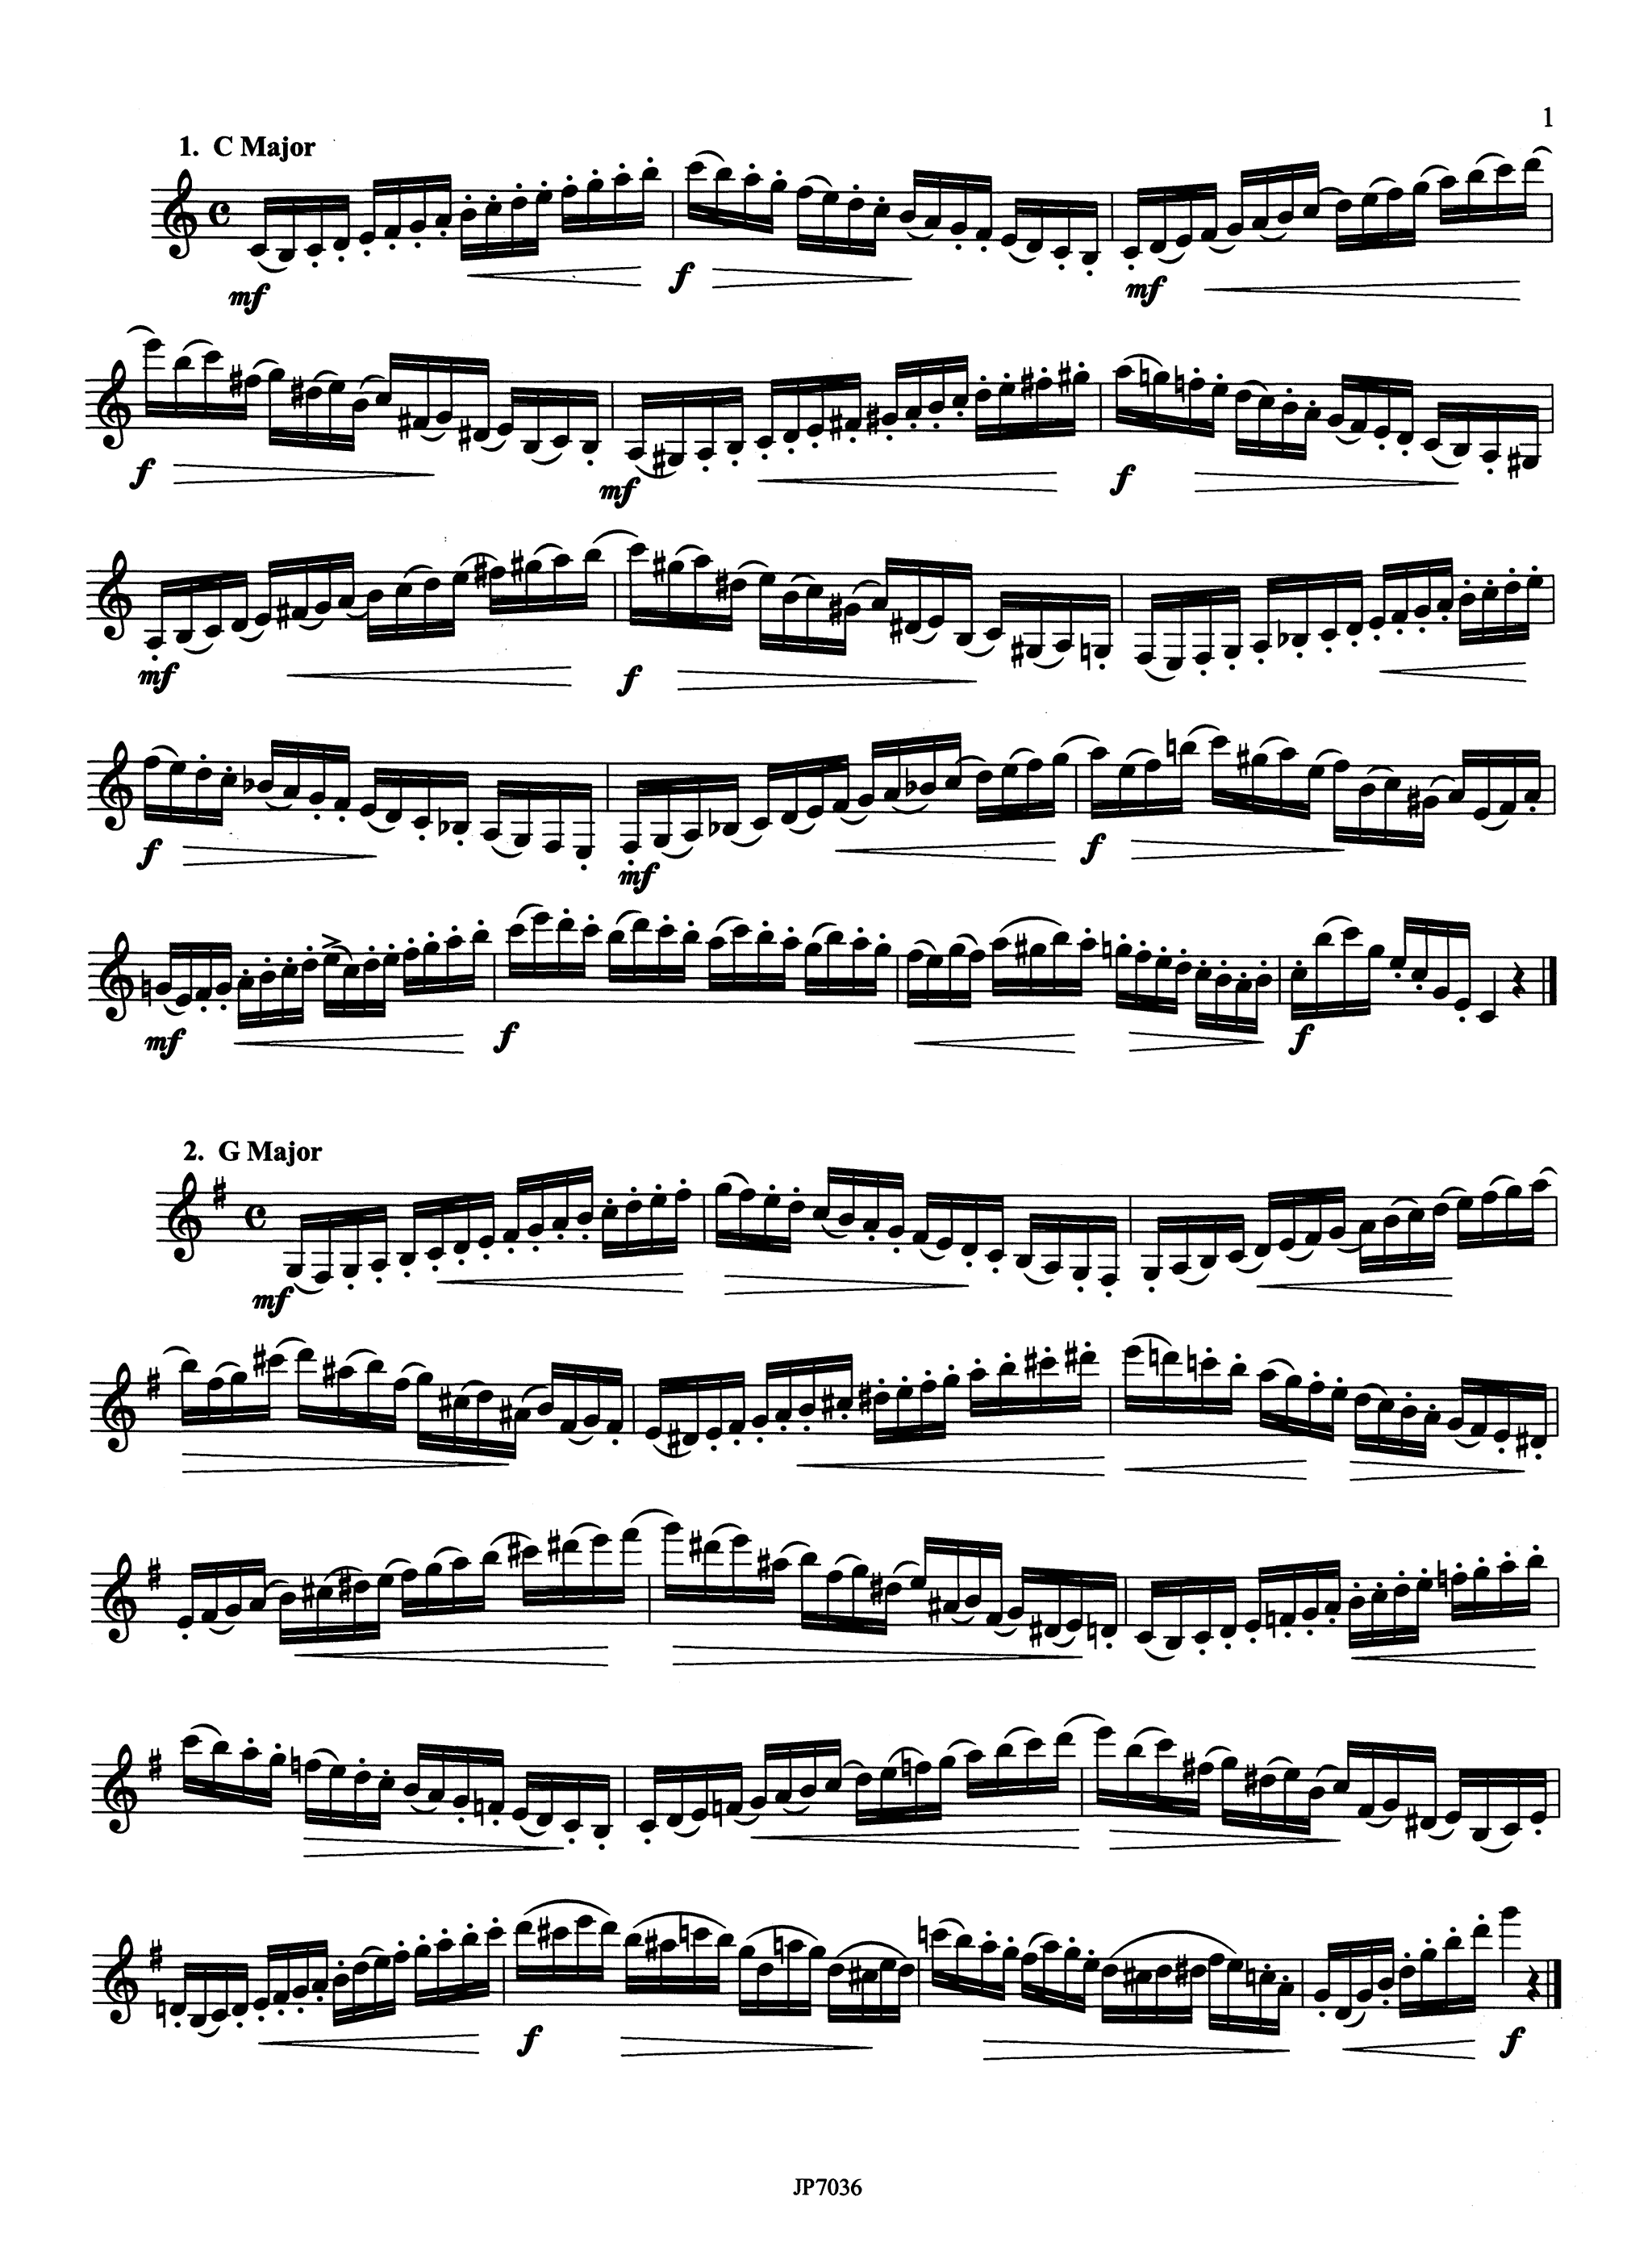 Kroepsch 416 Progressive Clarinet Studies, Book 3 Page 1